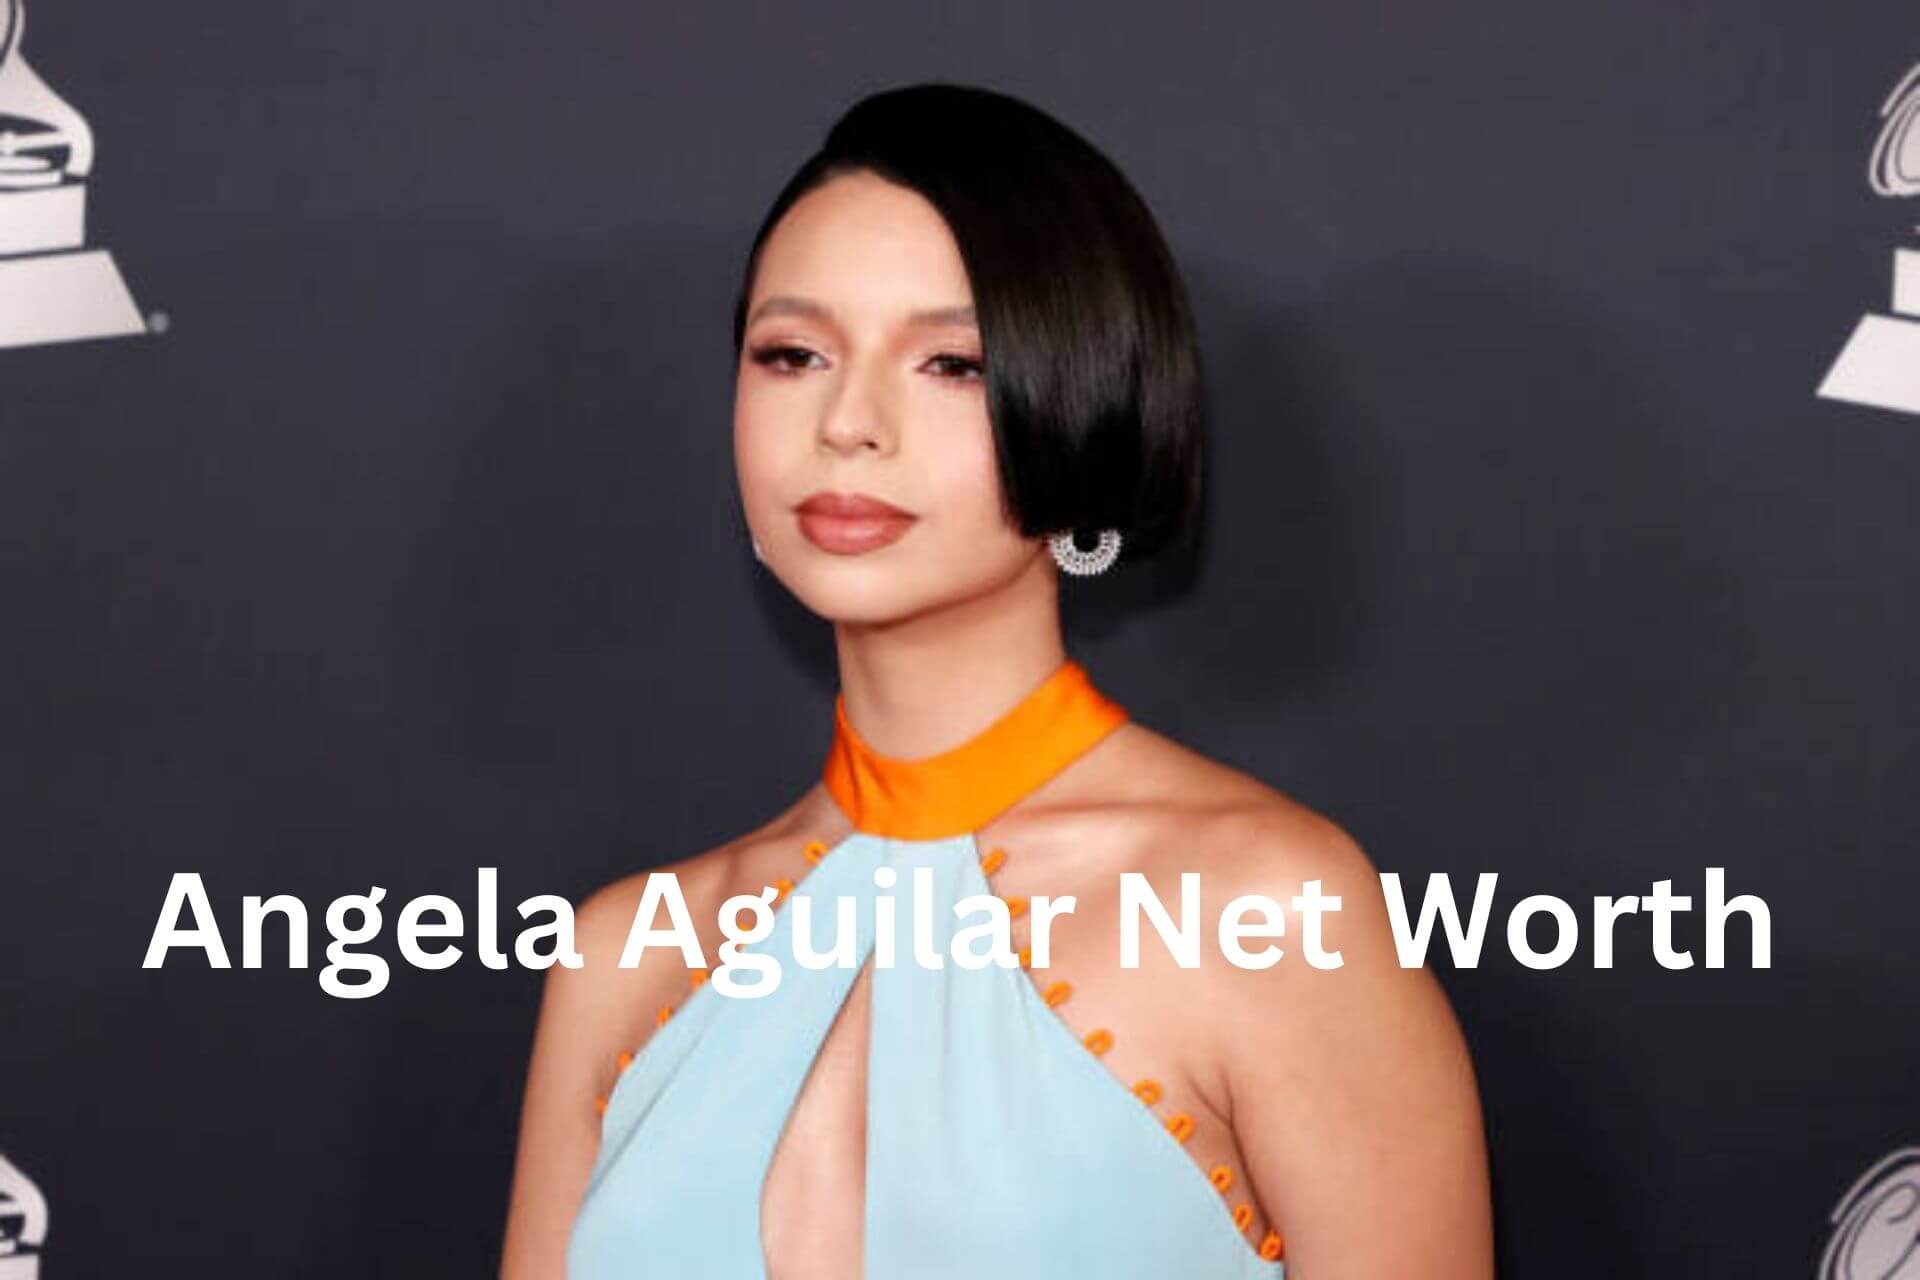 Angela Aguilar Net Worth